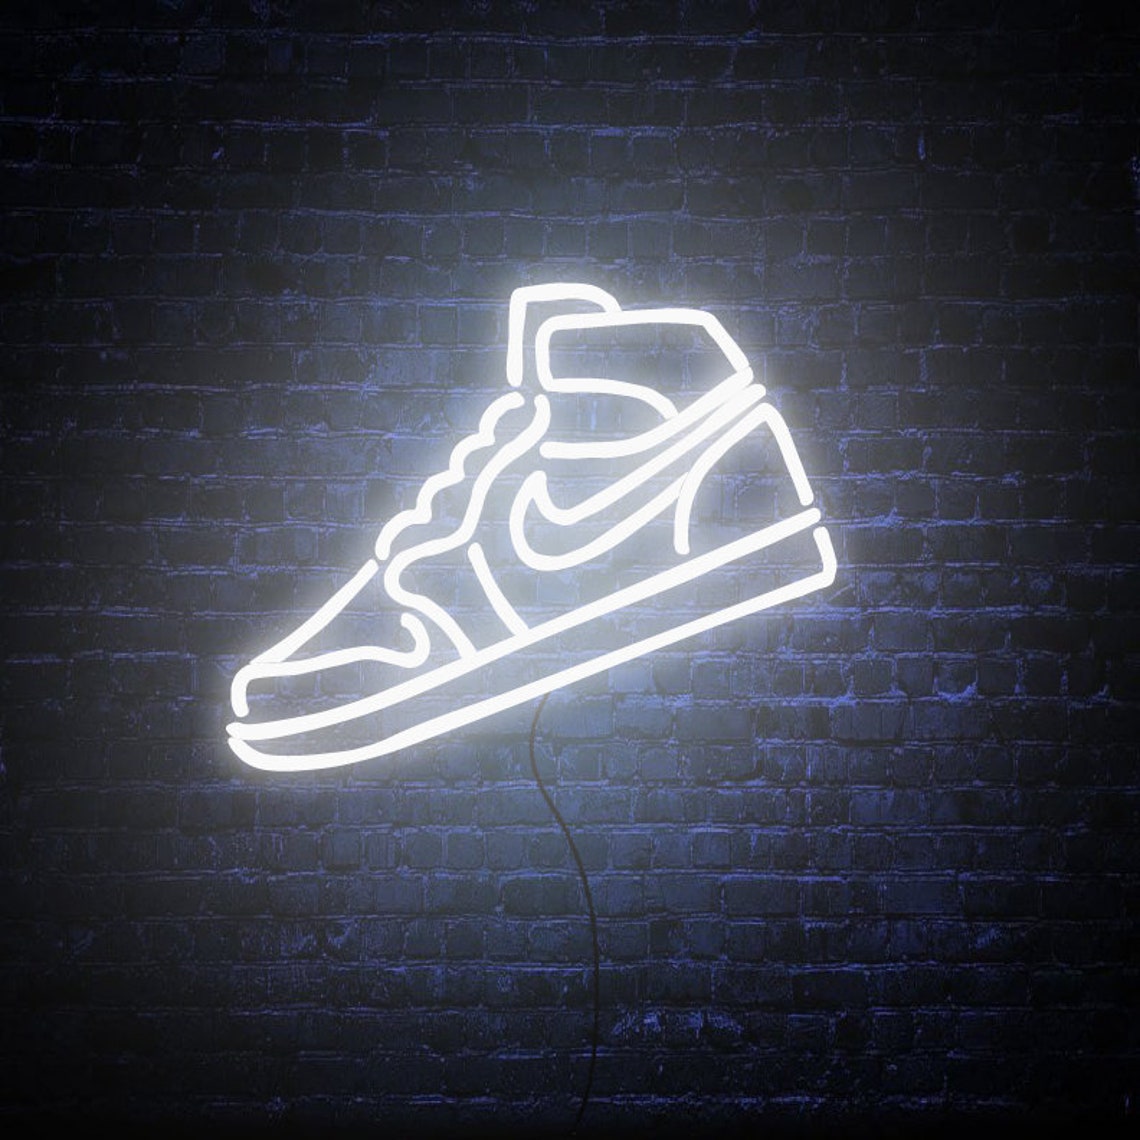 Nike Shoe Neon Sign Art, Zesta Neon, shoe neon lights